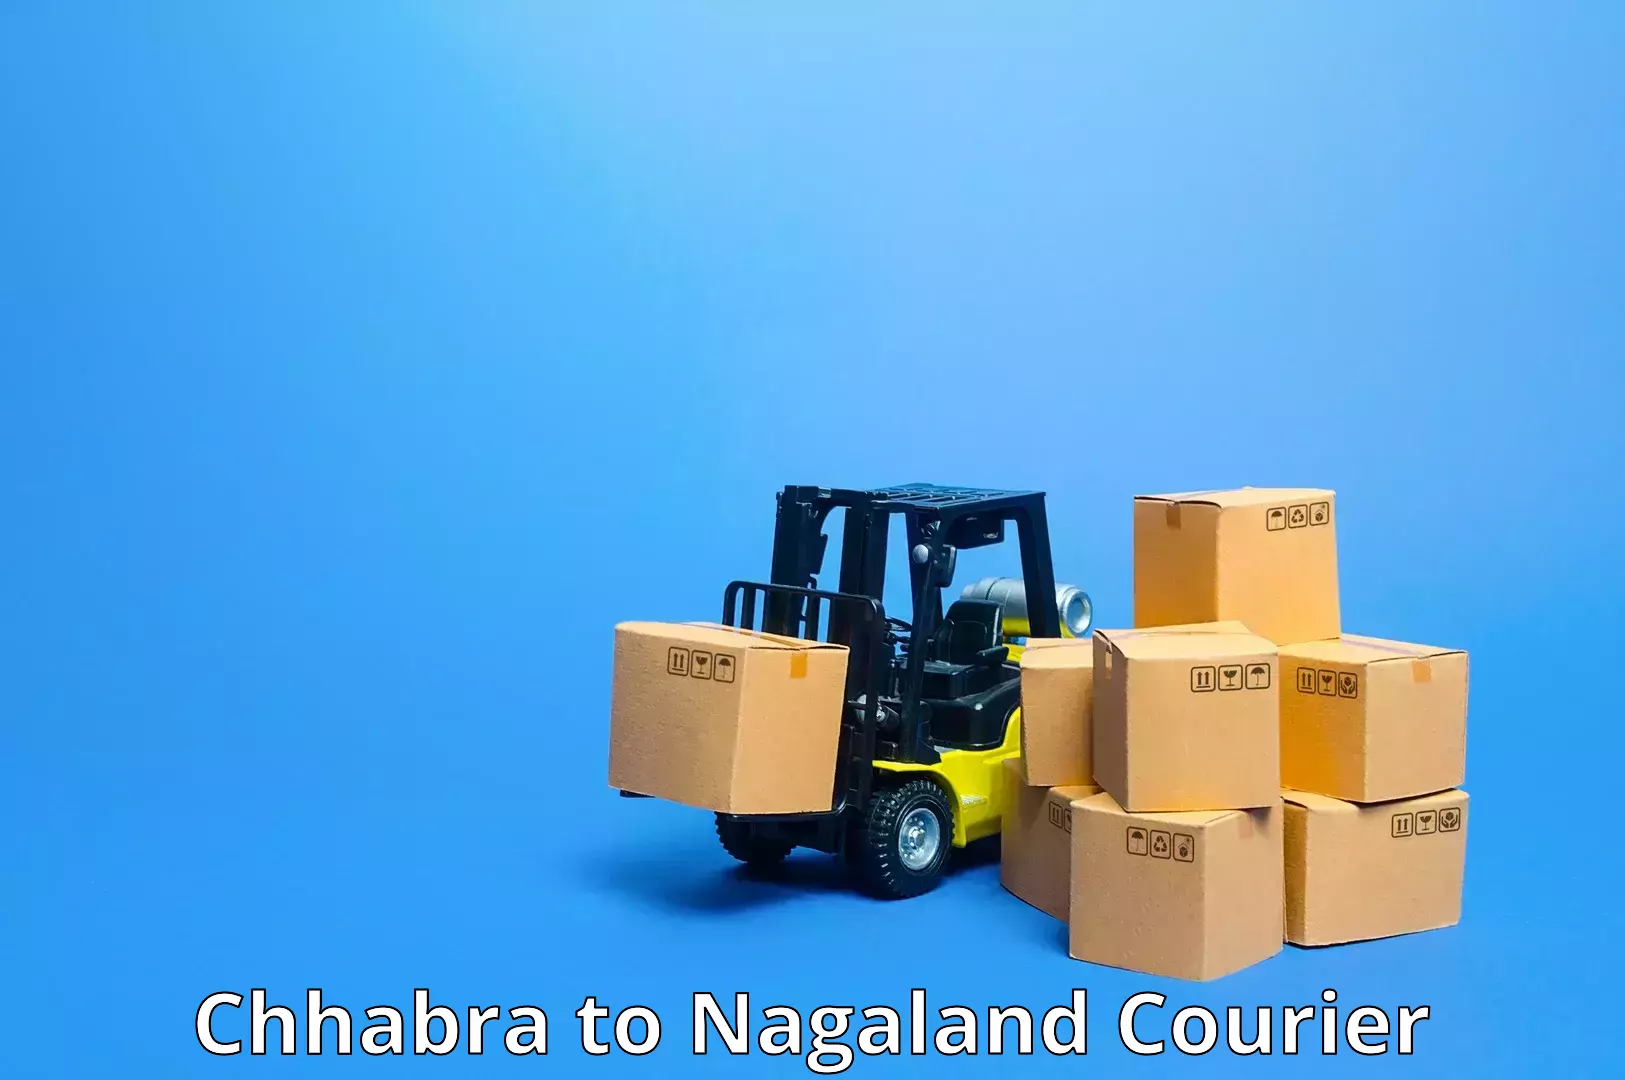 Cross-border shipping Chhabra to Nagaland